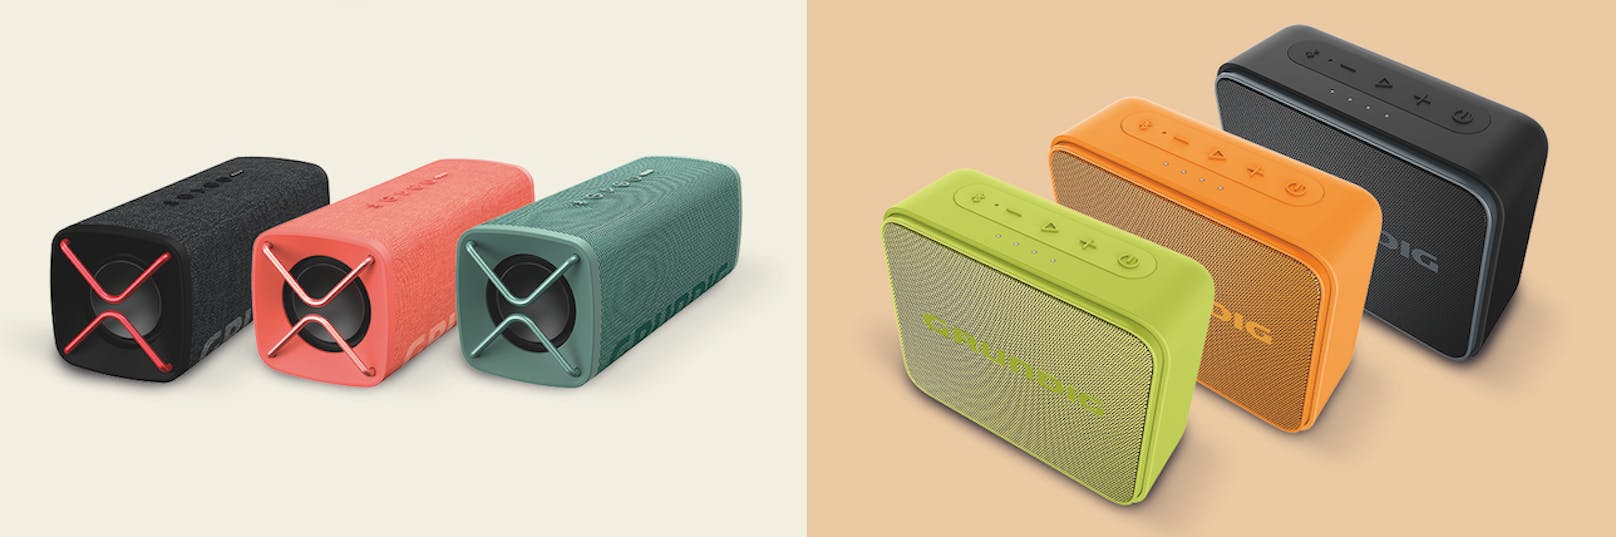 Farbenfroh und klangvoll: Neue Bluetooth-Lautsprecher von Grundig.